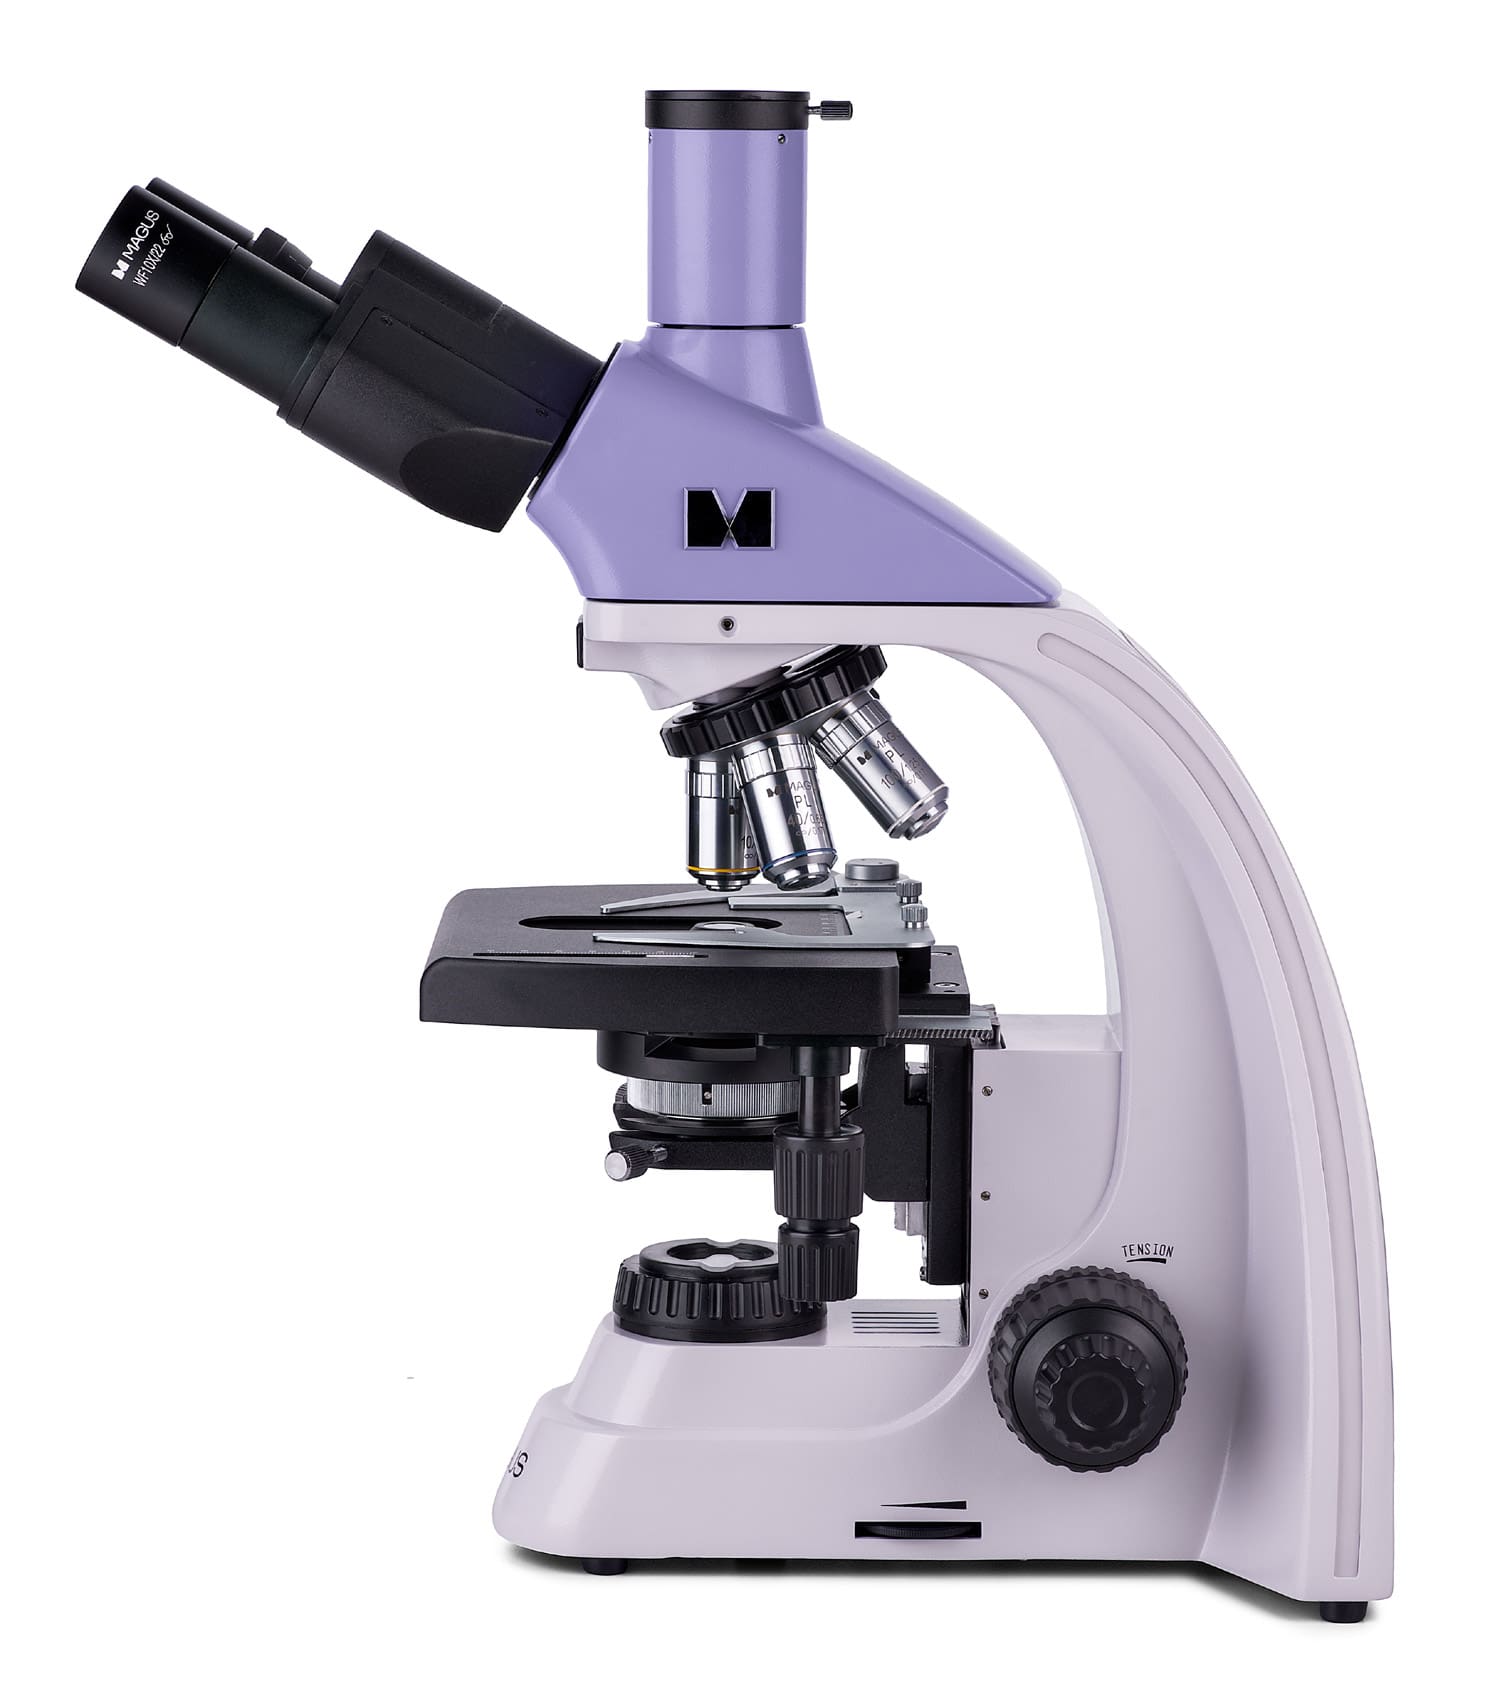 Микроскоп биологический Magus Bio 250TL